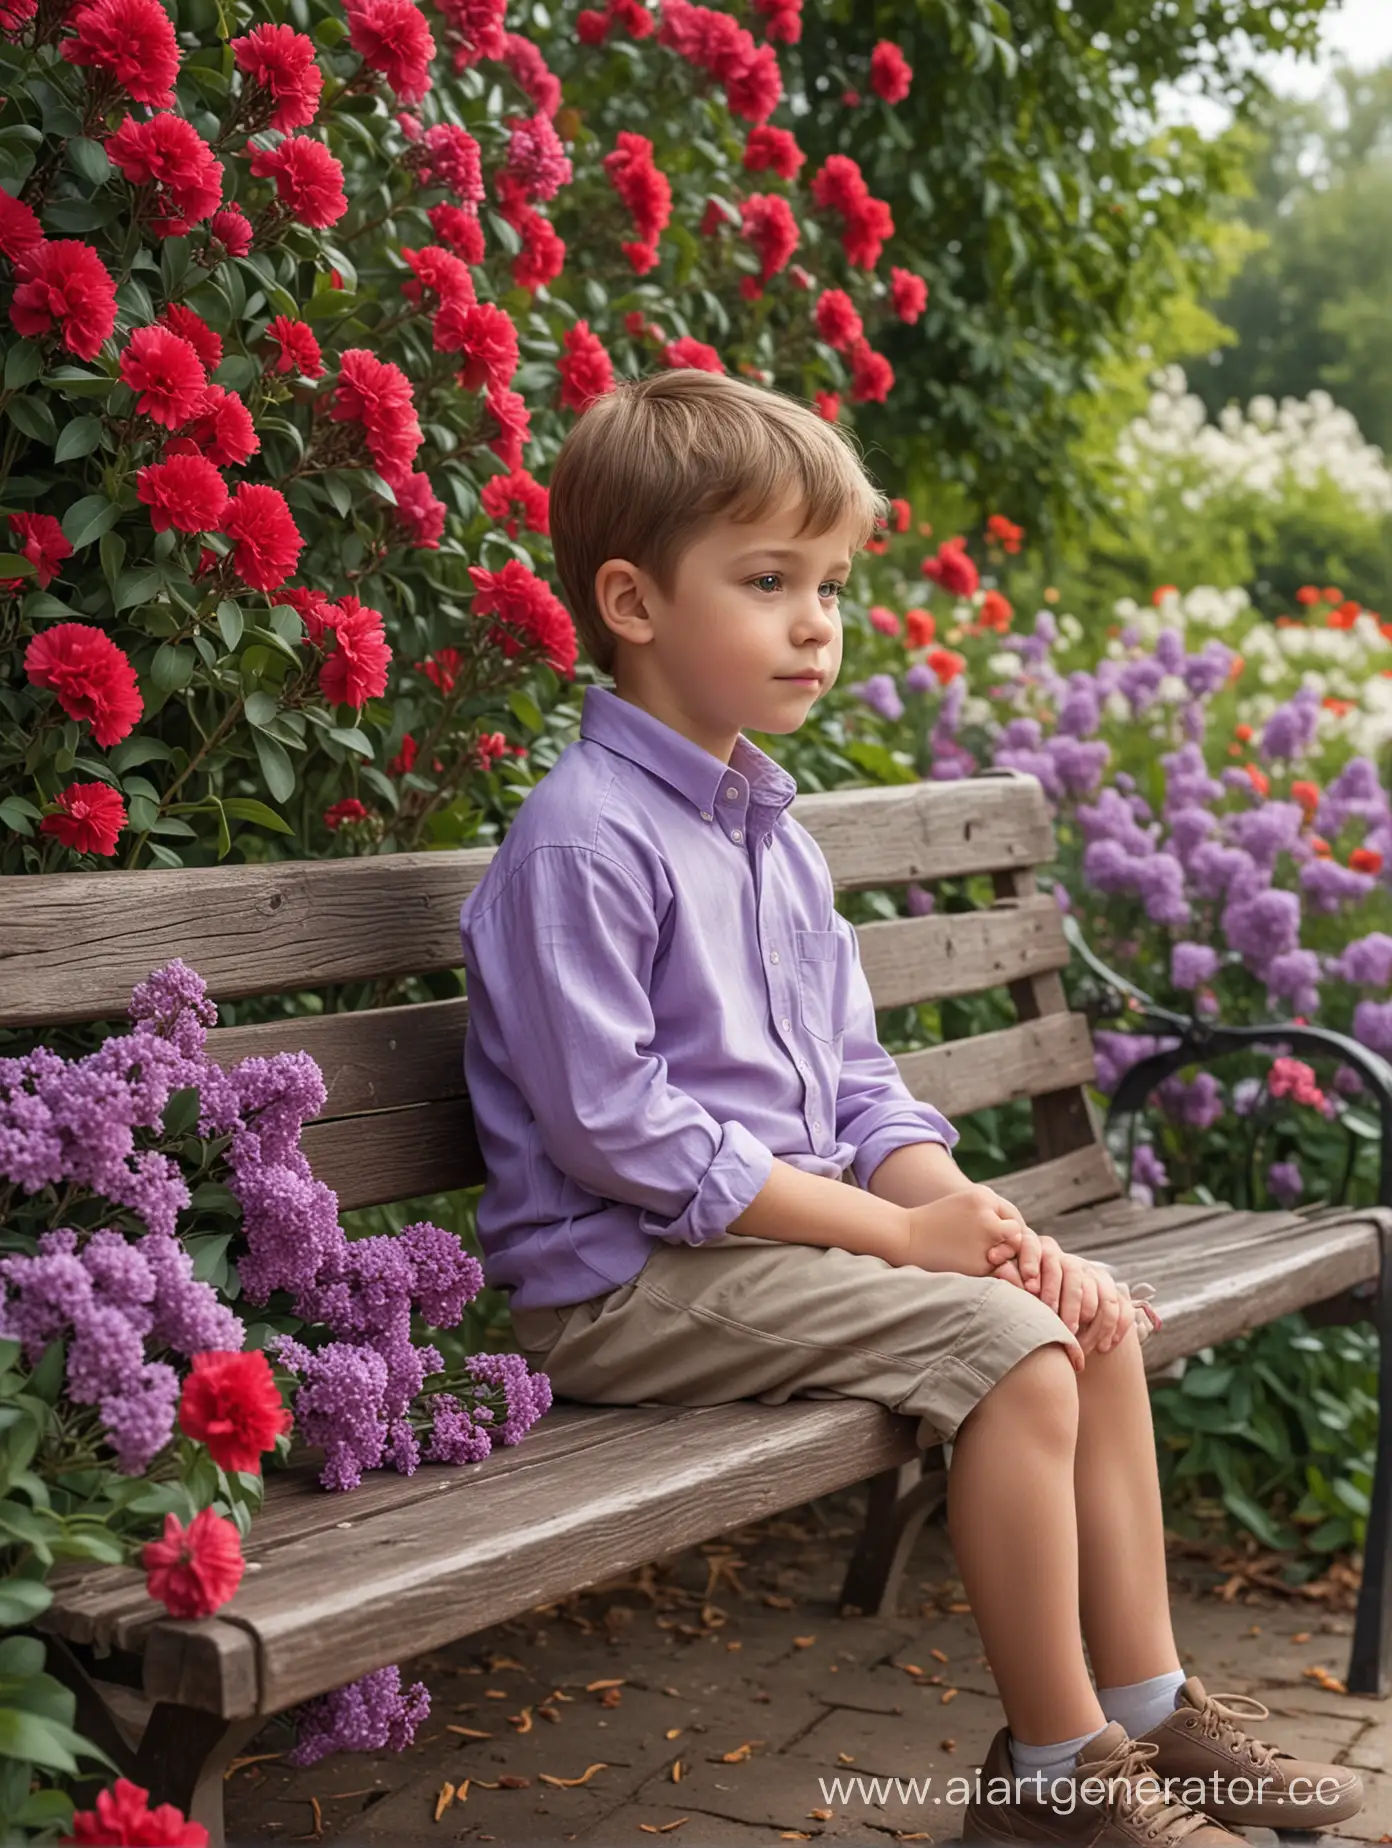 Маленький мальчик сидит на лавочке, вокруг цветет сирень, цветы сирени падают, на переднем плане цветы красная гвоздика, фон цветение сирени, фон сильно размыт, очень реалистично